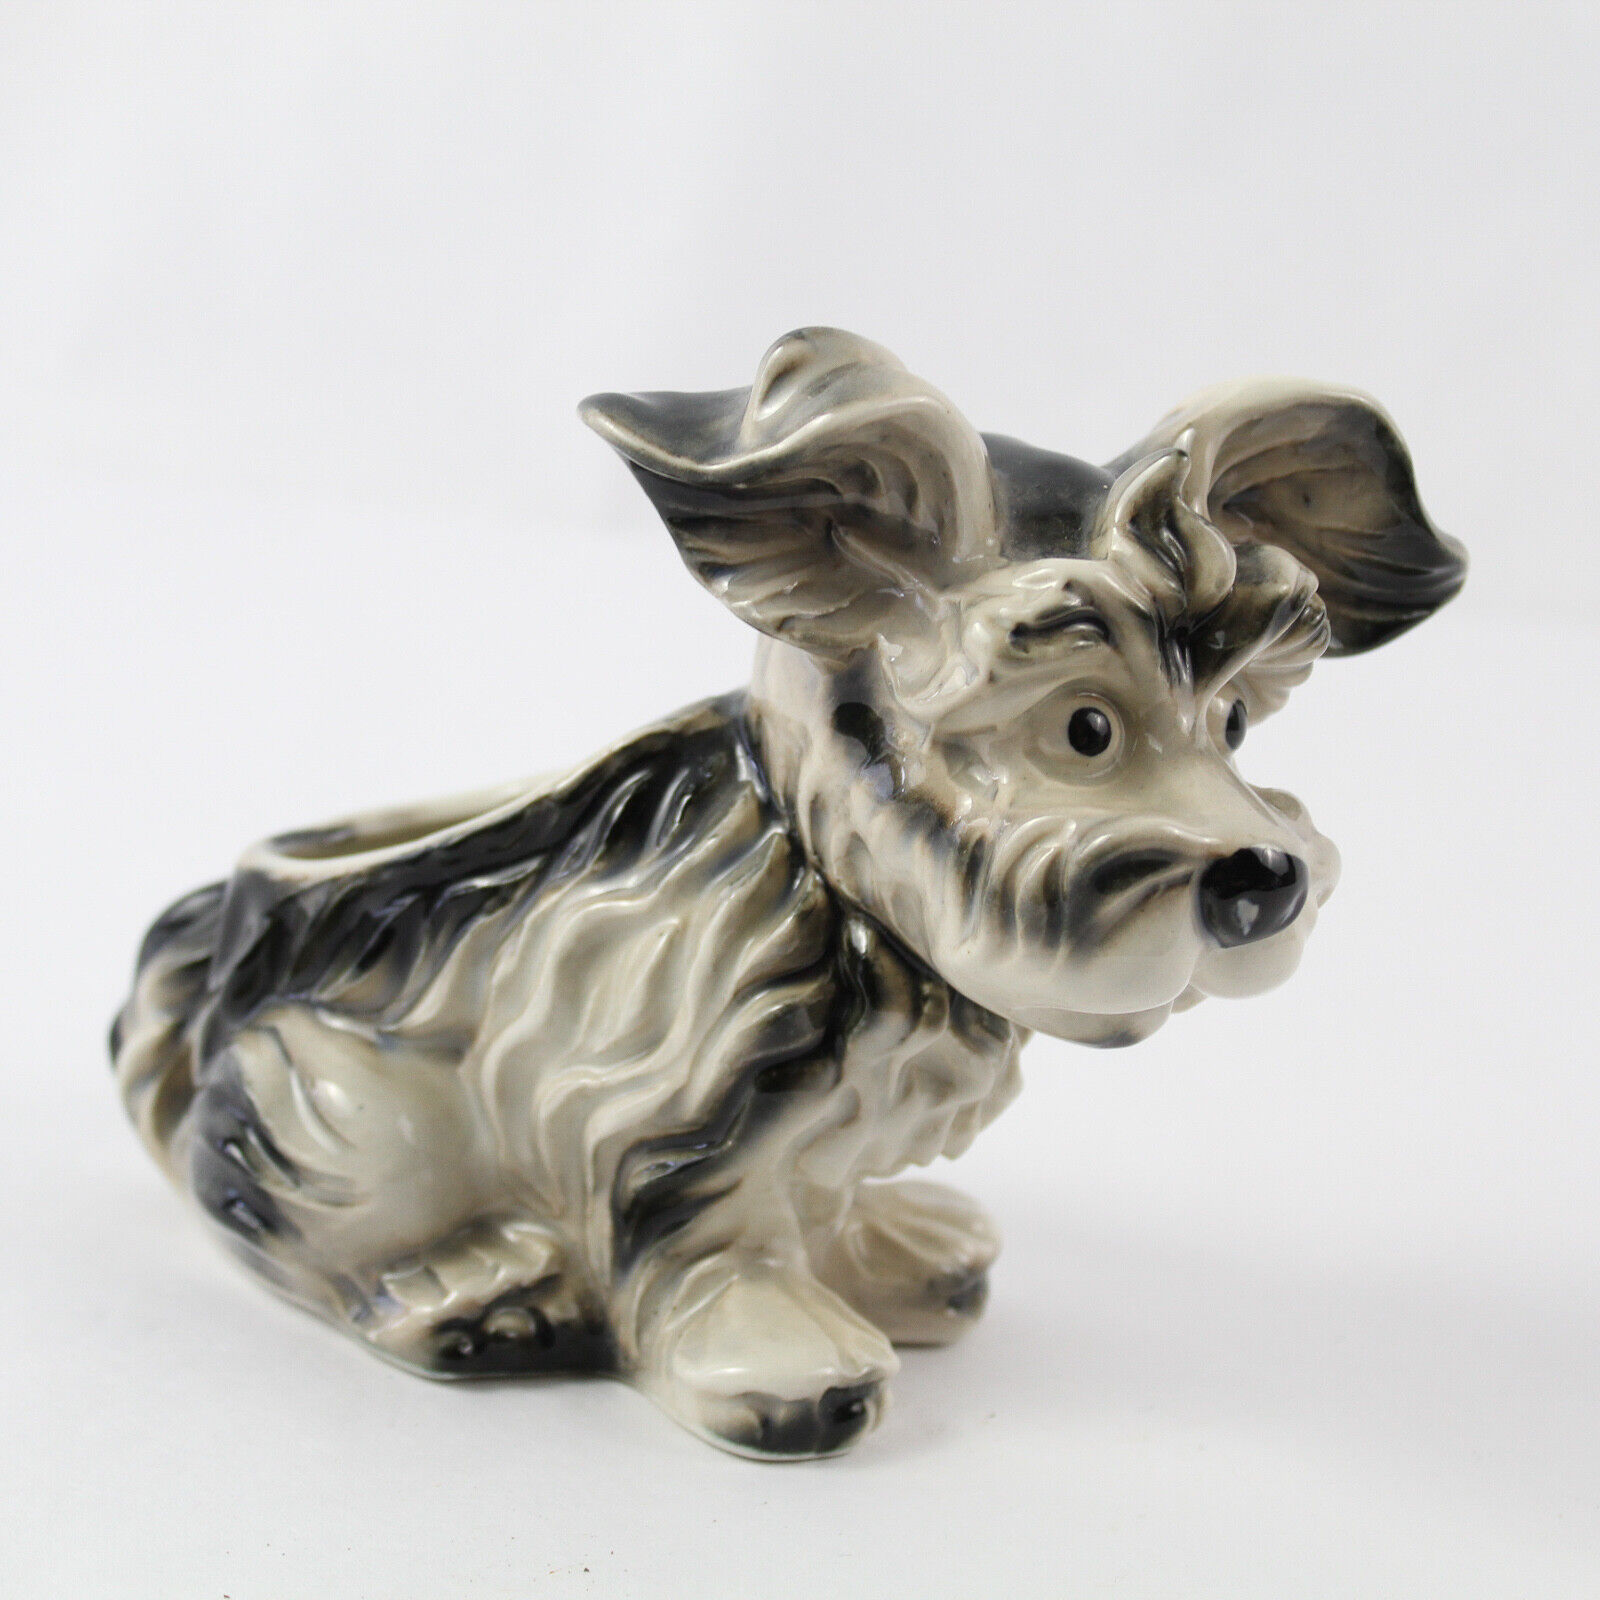 Vintage MCM Terrier Dog Ceramic Planter Made in Japan